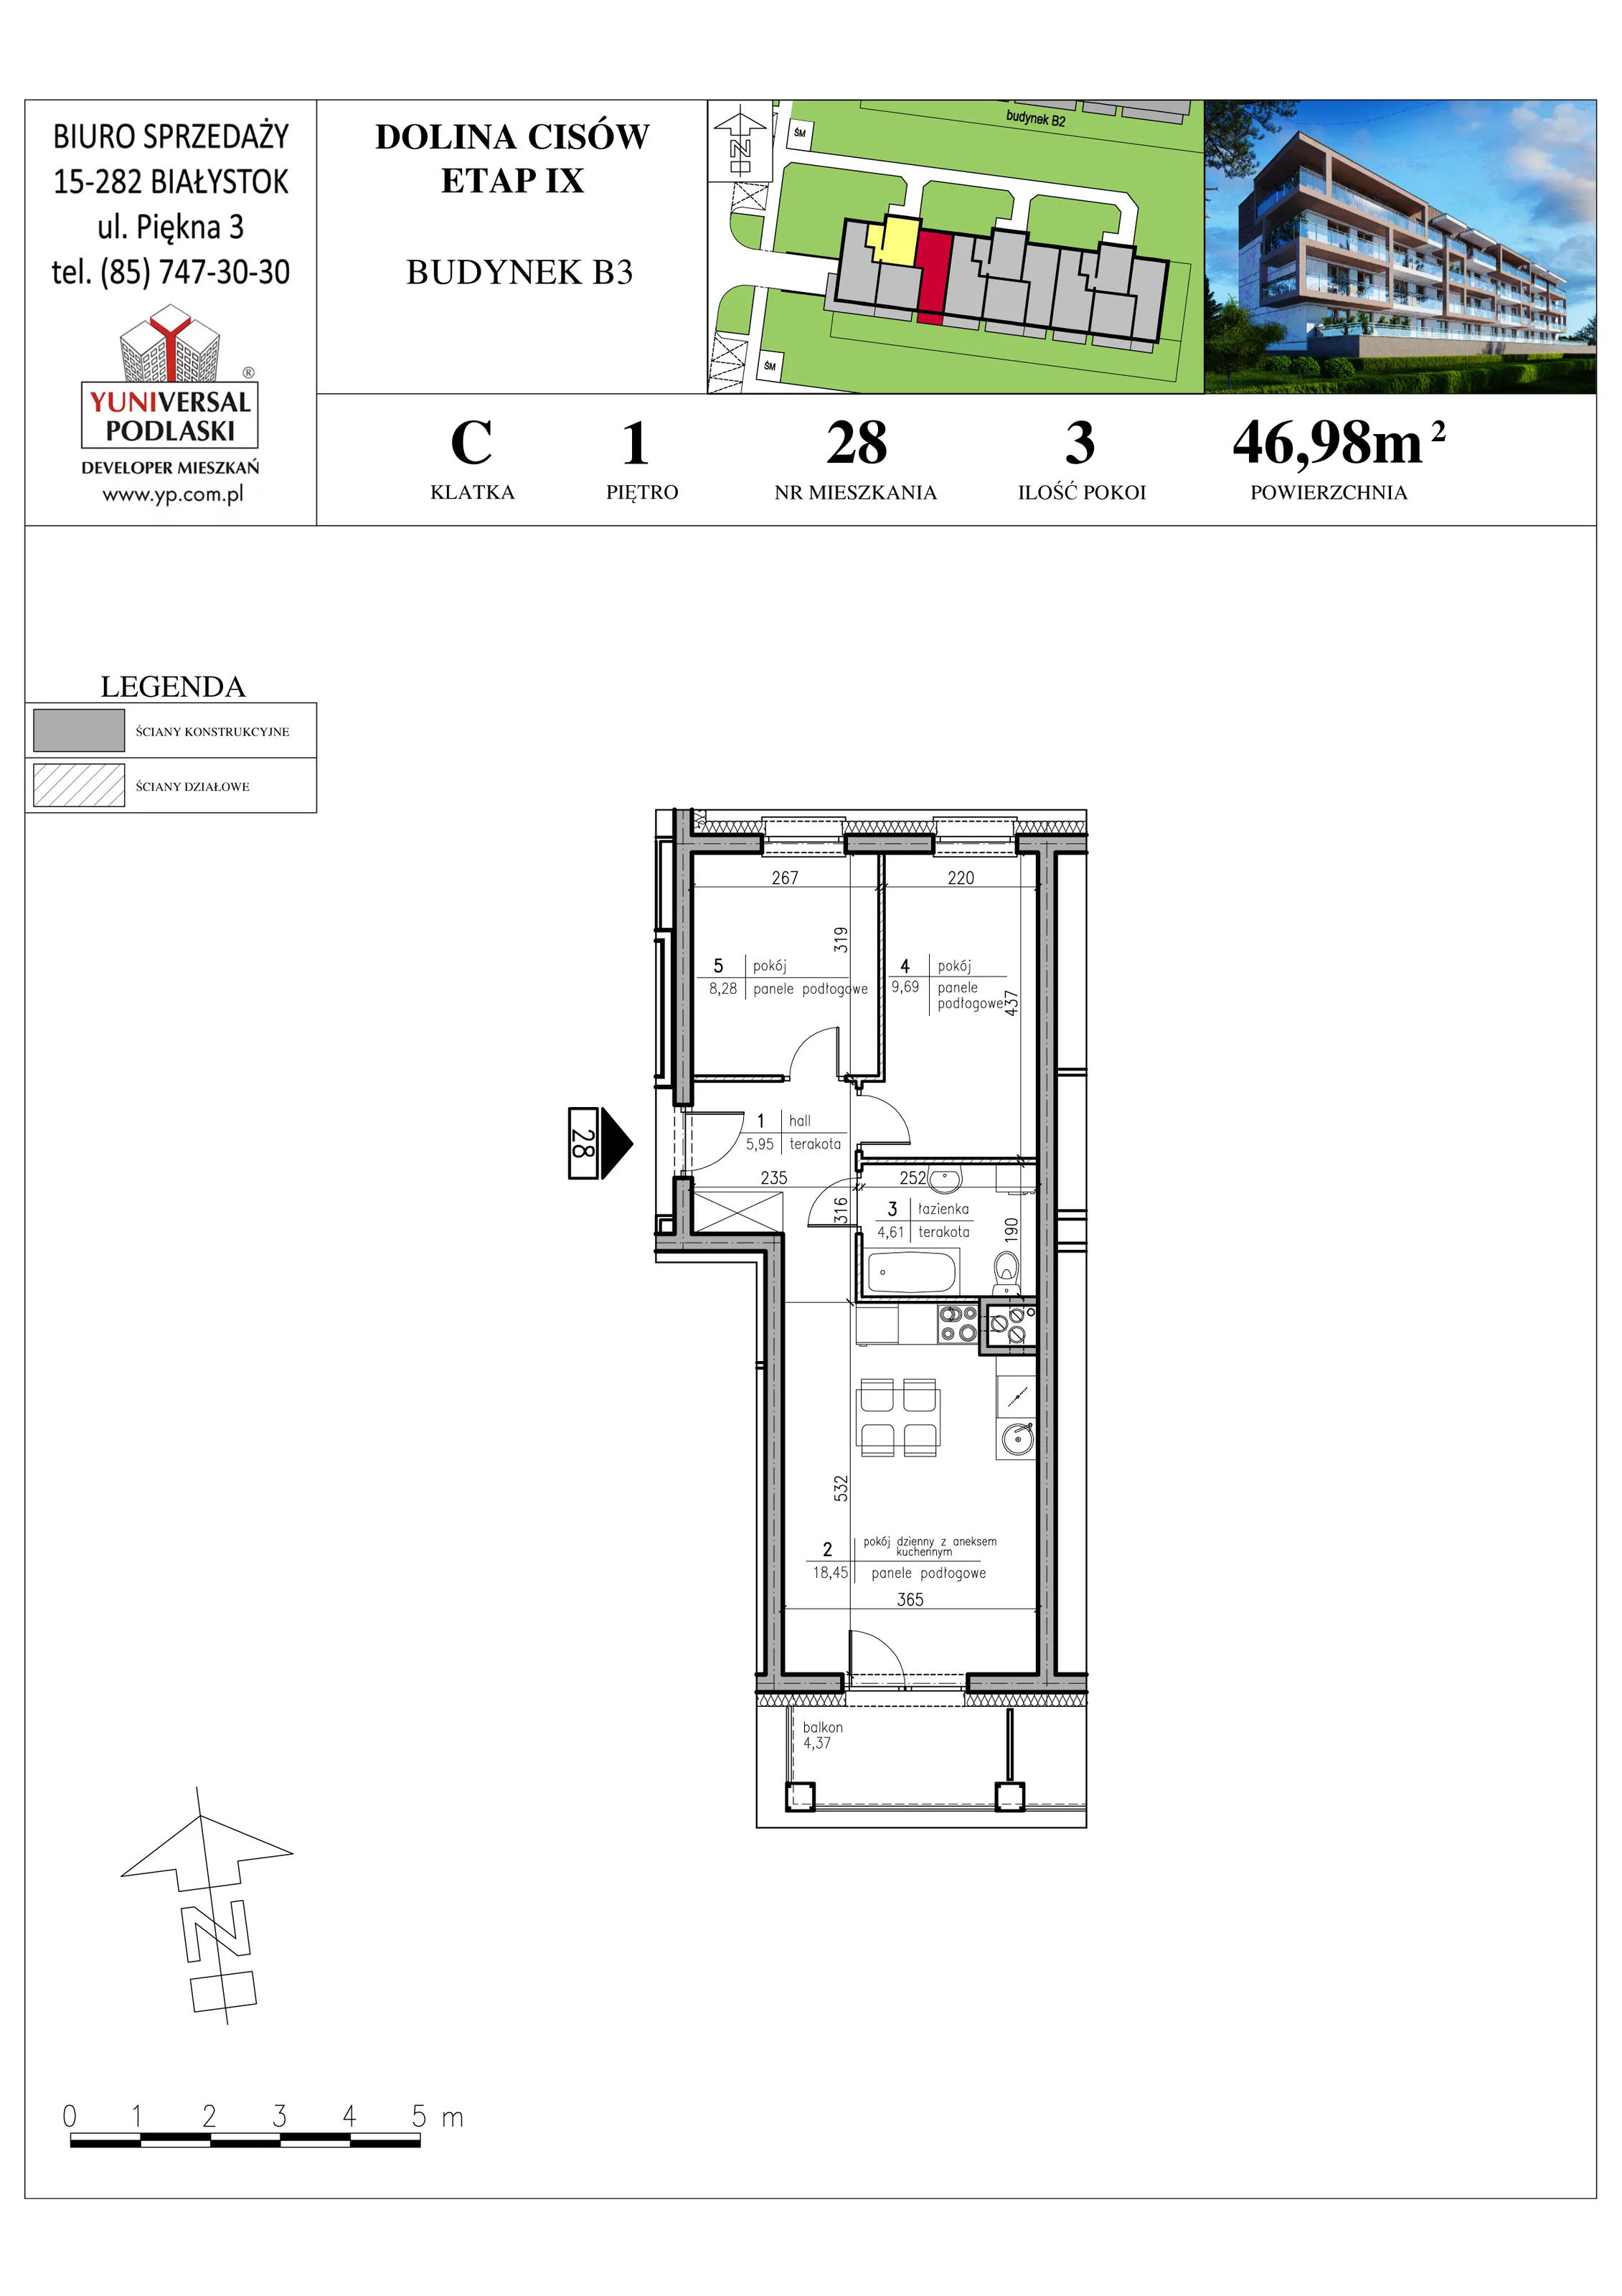 Mieszkanie 46,98 m², piętro 1, oferta nr B3-28, Osiedle Dolina Cisów - Etap IX, Wasilków, ul. Nadawki